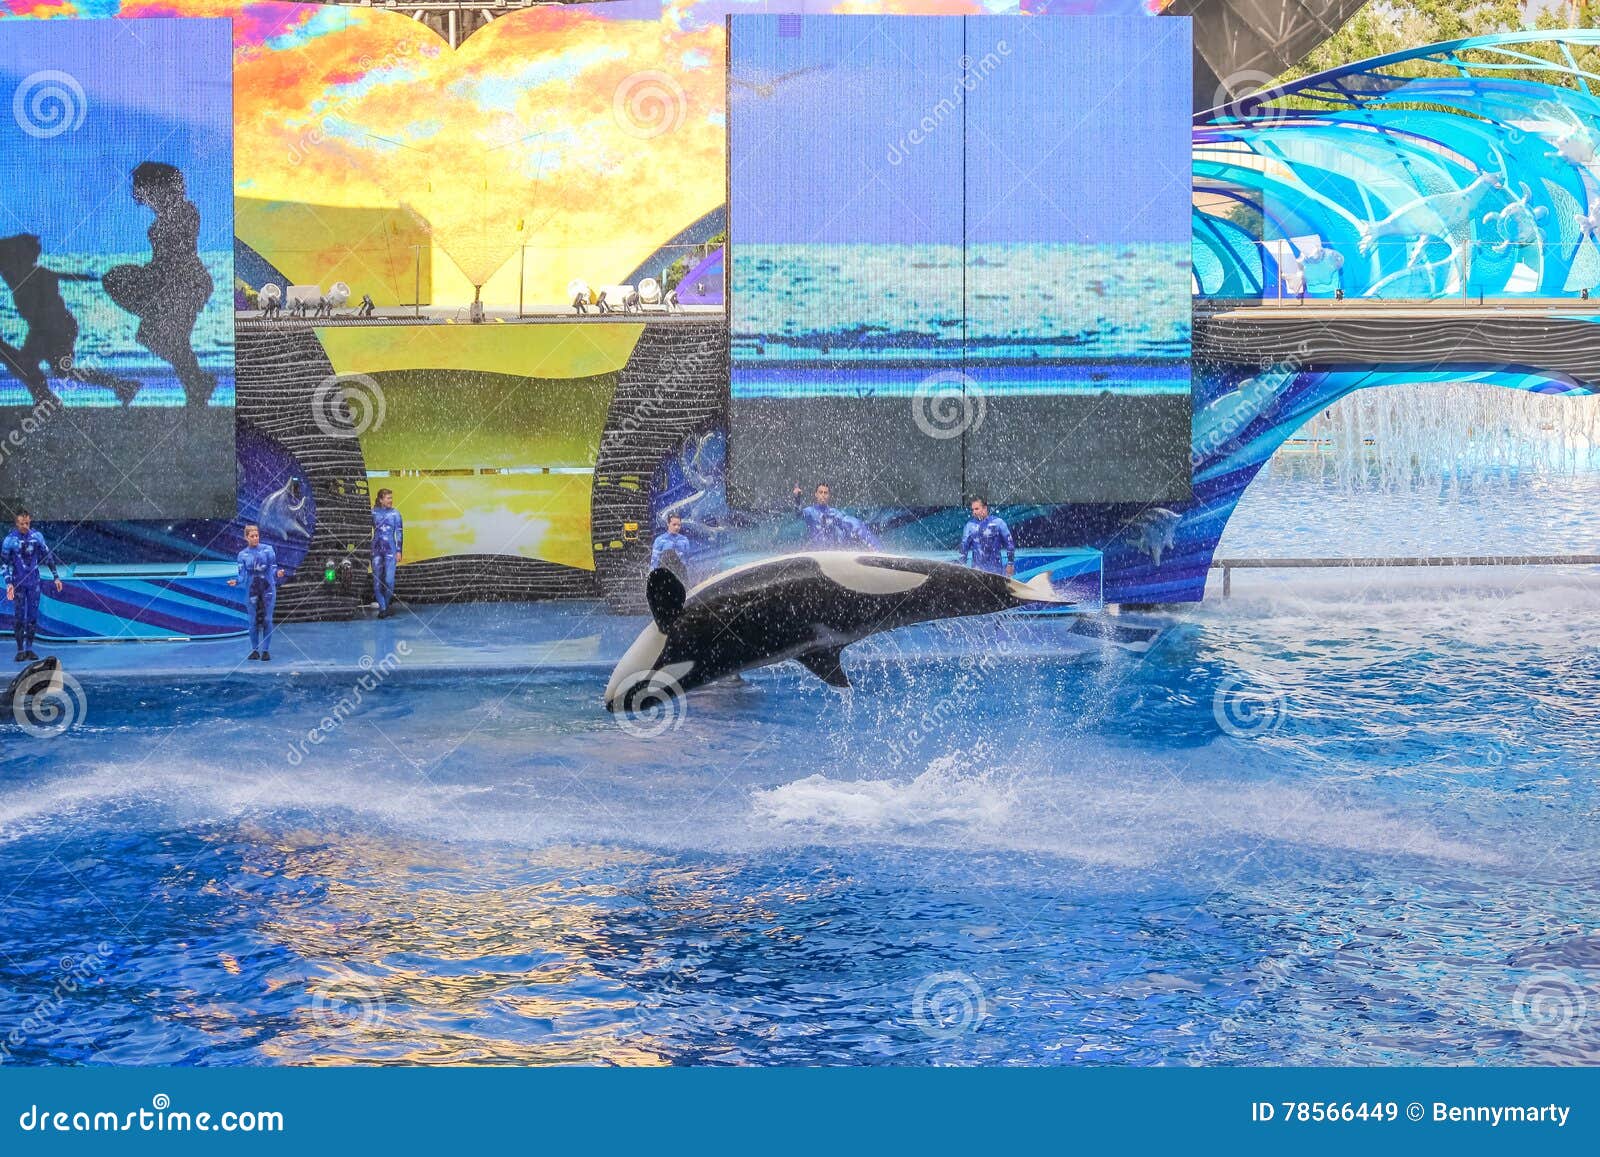 Seaworld killer whale editorial stock image. Image of danger - 78566449